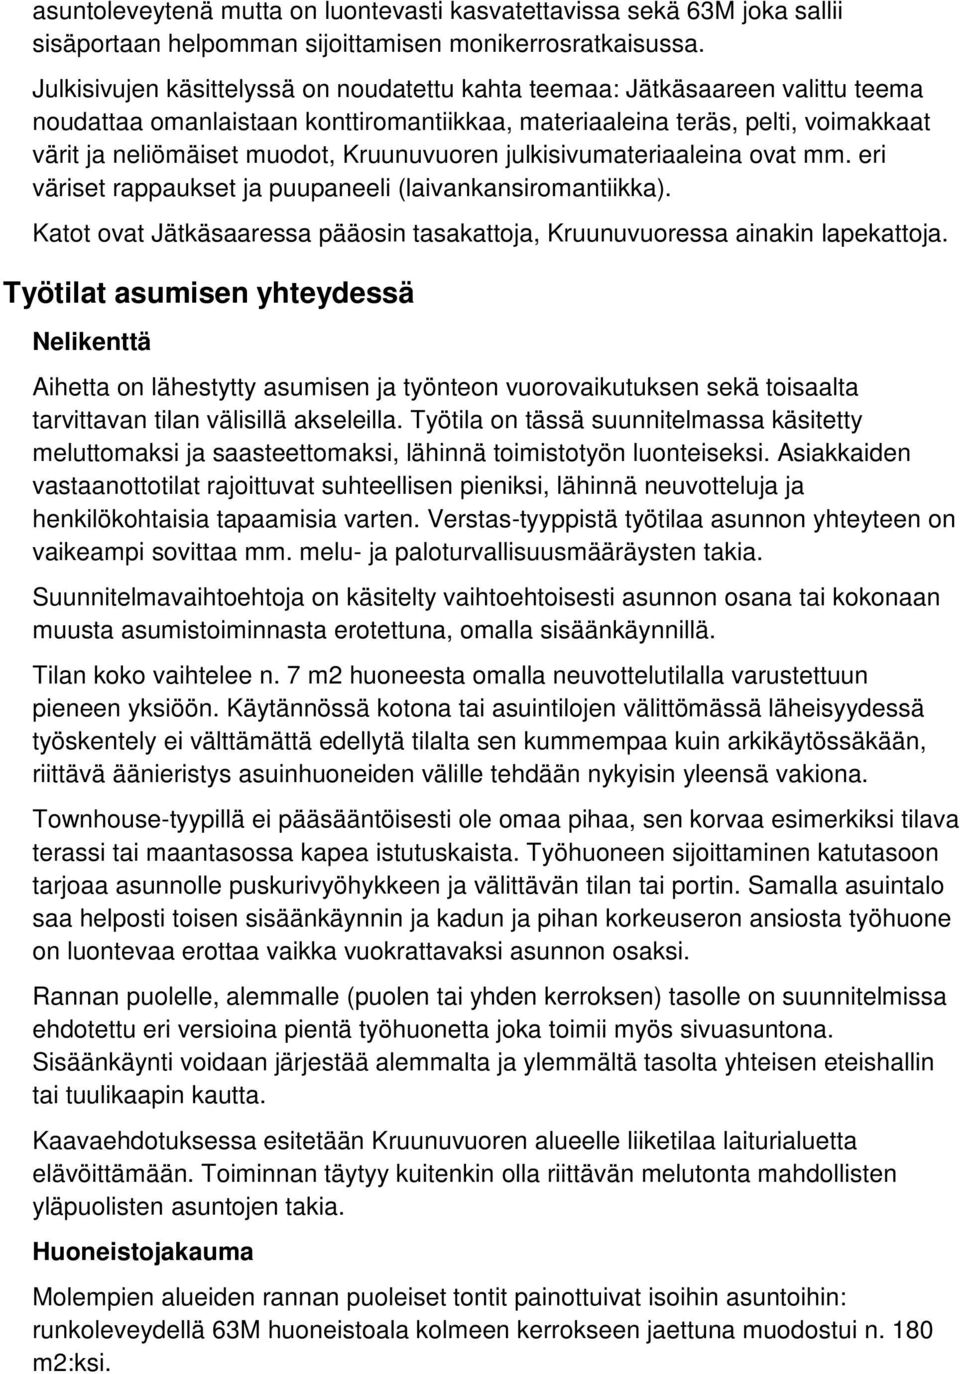 ruunuvuoren julkisivumateriaaleina ovat mm. eri väriset rappaukset ja puupaneeli (laivankansiromantiikka). atot ovat Jätkäsaaressa pääosin tasakattoja, ruunuvuoressa ainakin lapekattoja.